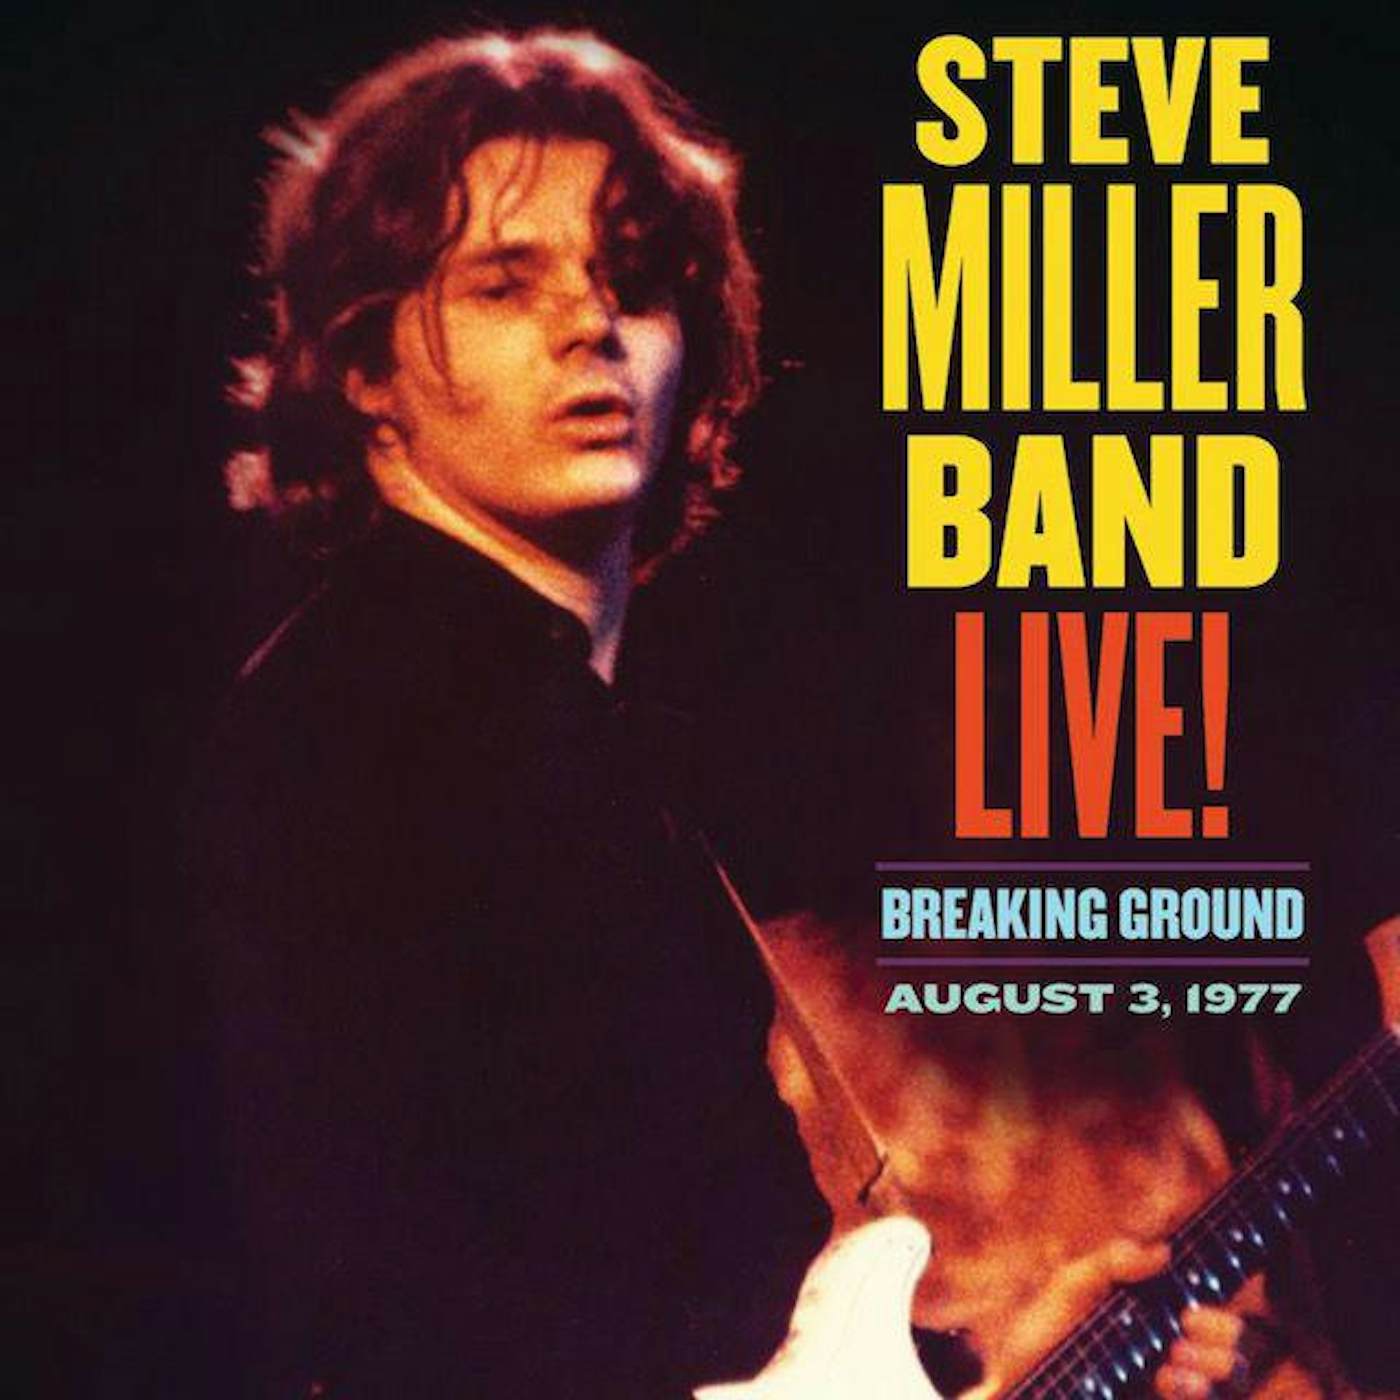 Steve Miller Band LIVE BREAKING GROUND AUGUST 3 1977 Vinyl Record